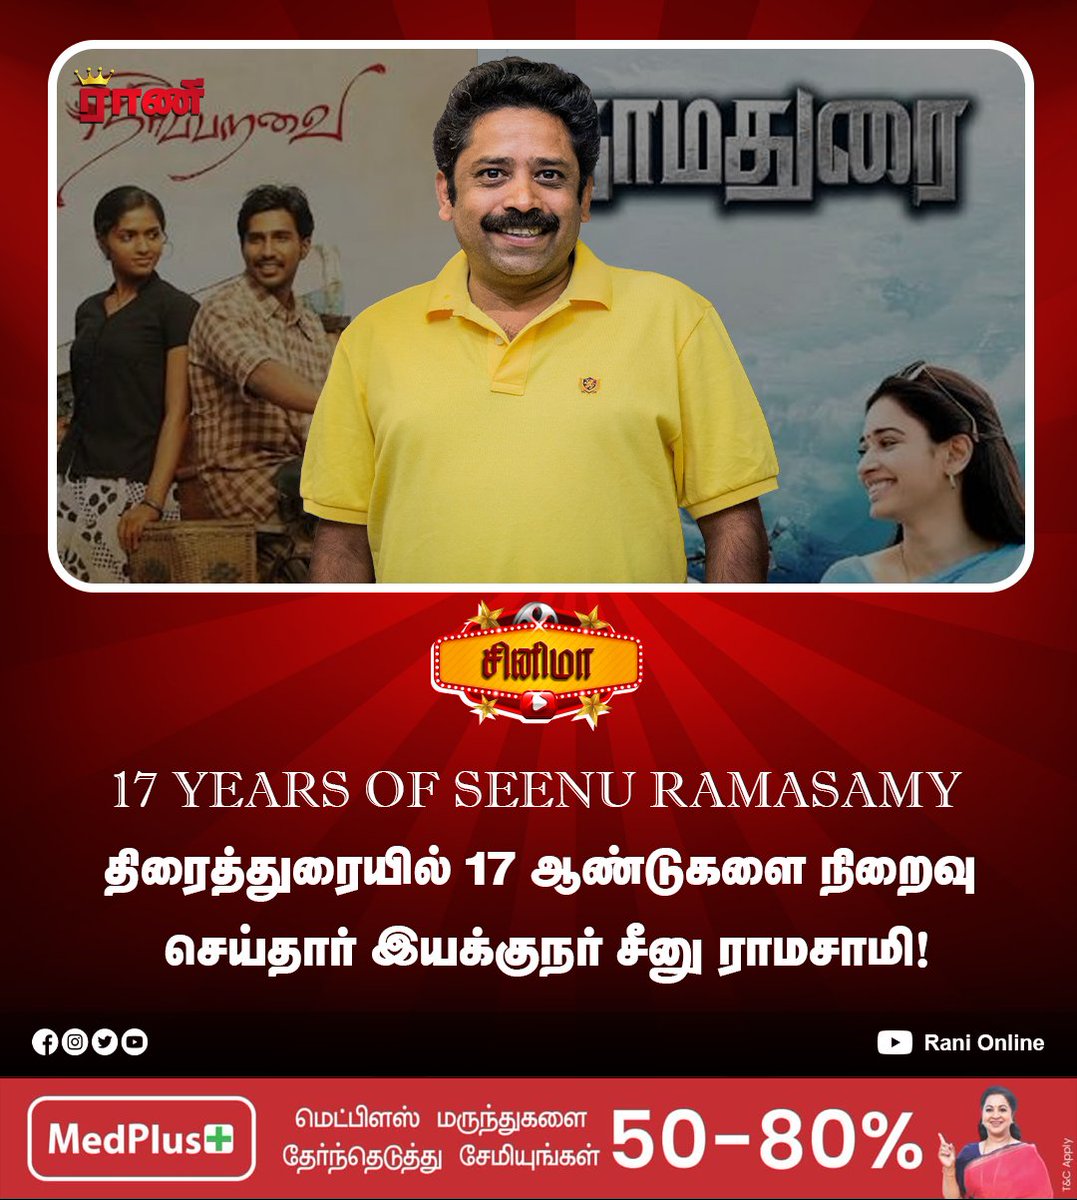 திரைத்துரையில் 17 ஆண்டுகளை நிறைவு செய்தார் இயக்குநர் சீனு ராமசாமி!

#17YearsOfSeenuRamasamy  #seenu #Director  #neerparavai #dharmadurai #Cinema  #TamilCinema  #ranionline